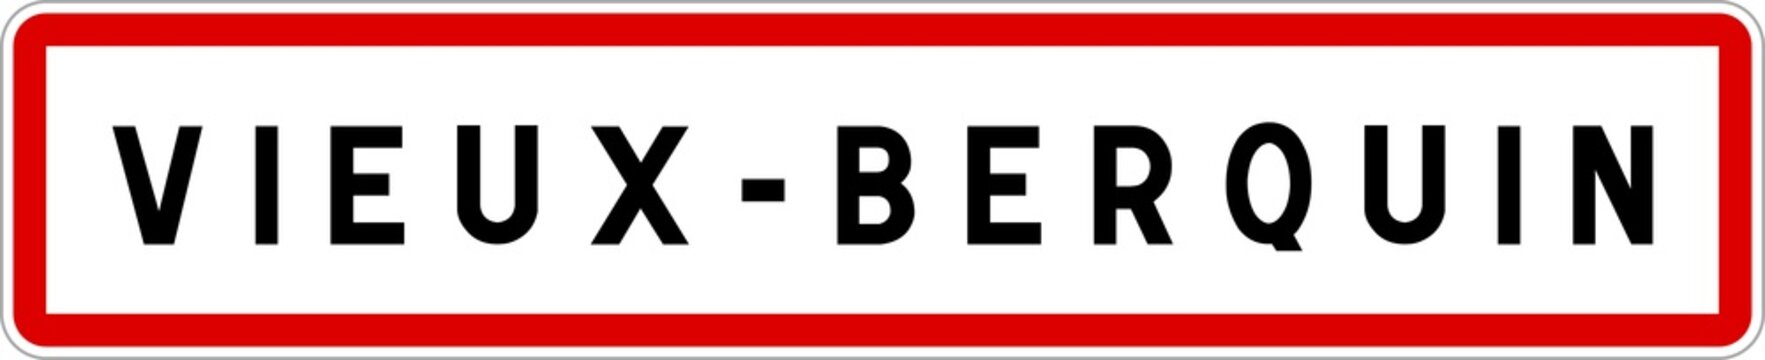 Panneau entrée ville agglomération Vieux-Berquin / Town entrance sign Vieux-Berquin